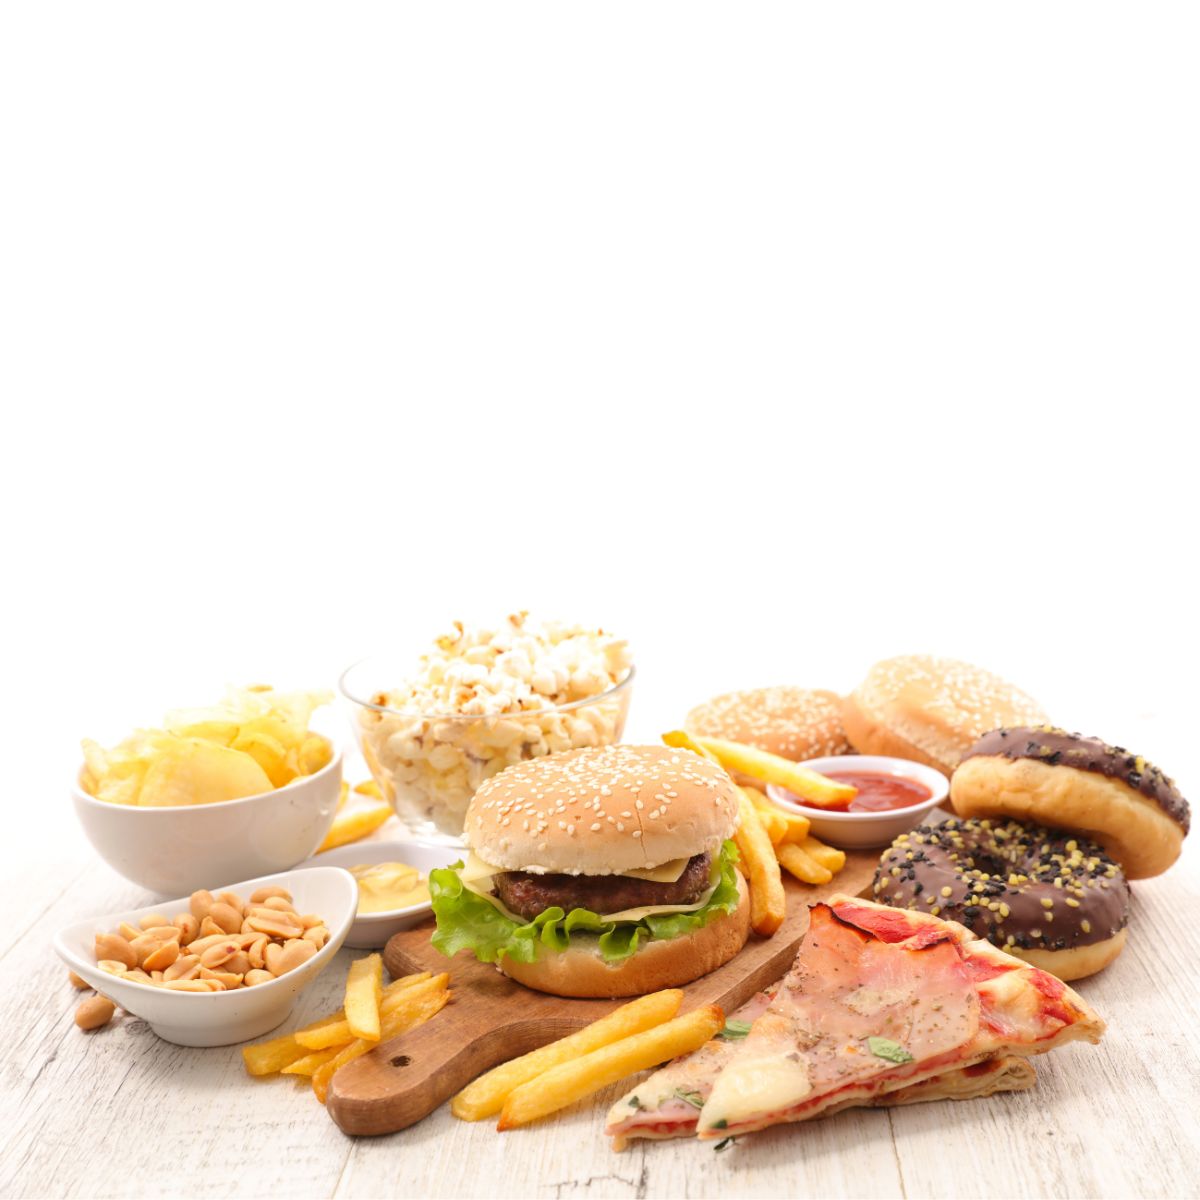 Ingesta excesiva de alimentos grasos pueden provocar reflujo esofagico